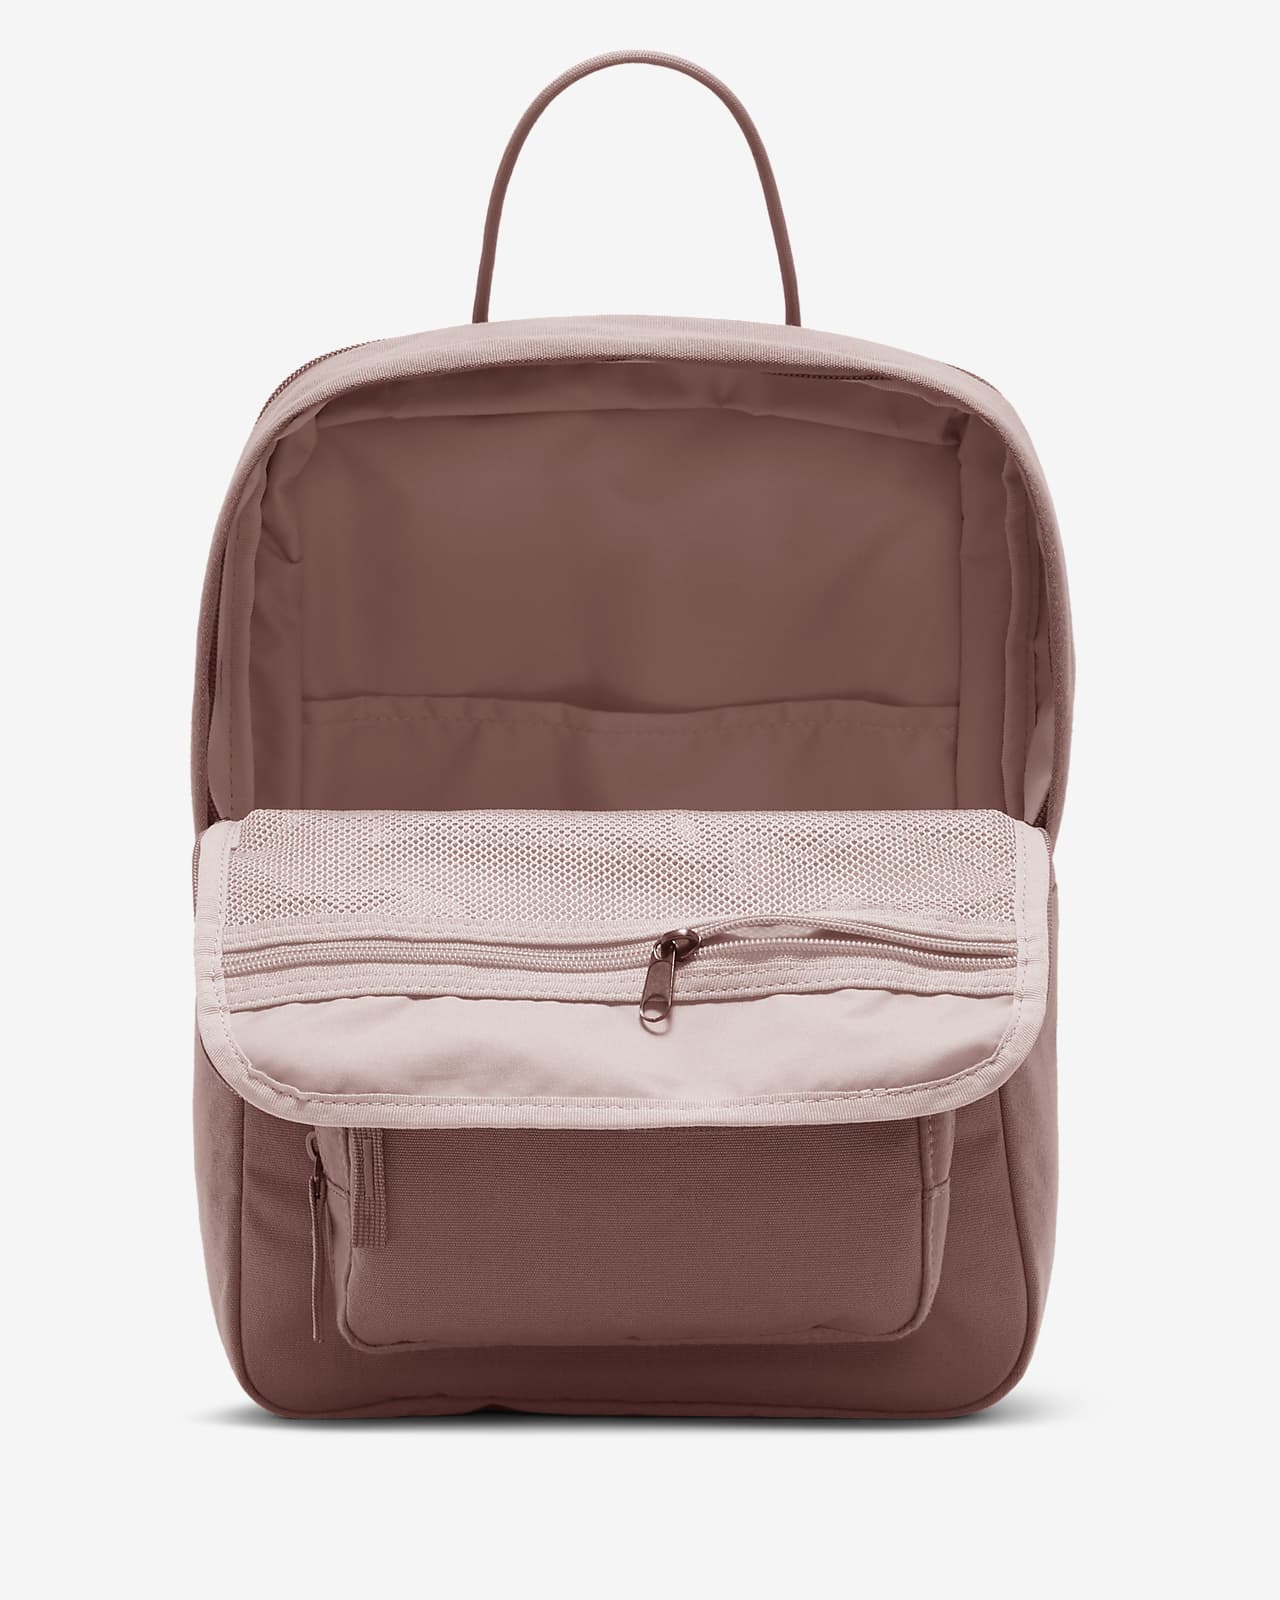 nike backpack brown